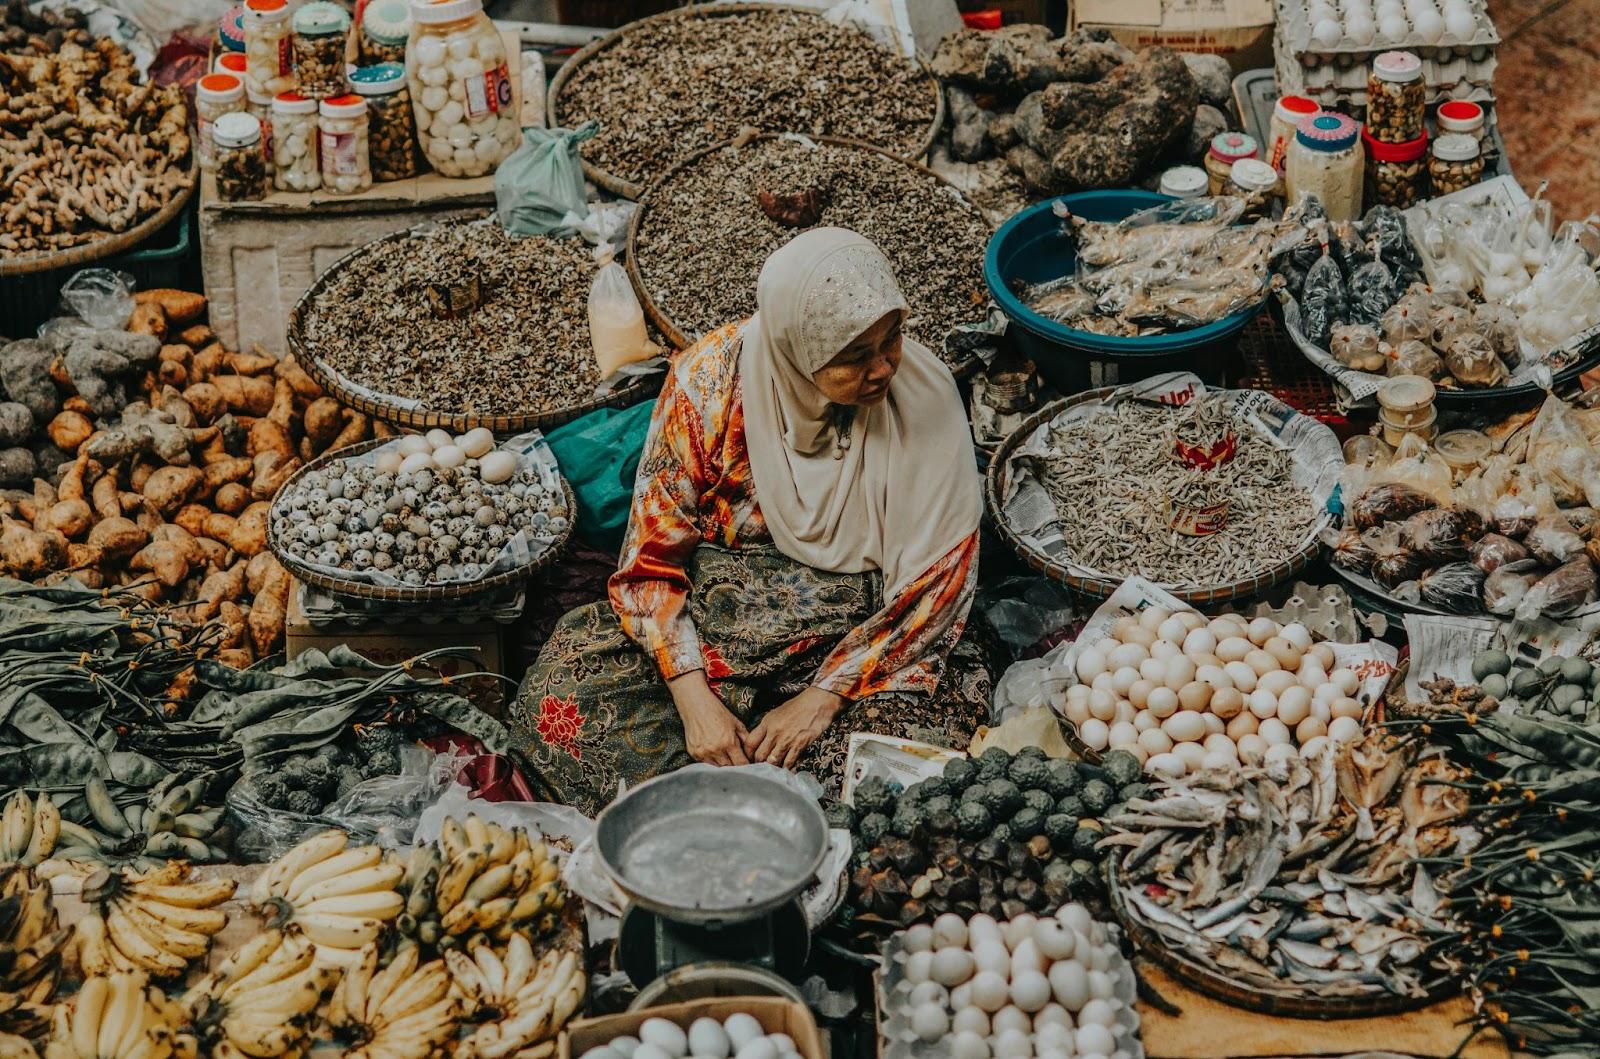 Old woman selling at the market at Kota Bharu, Malaysia.